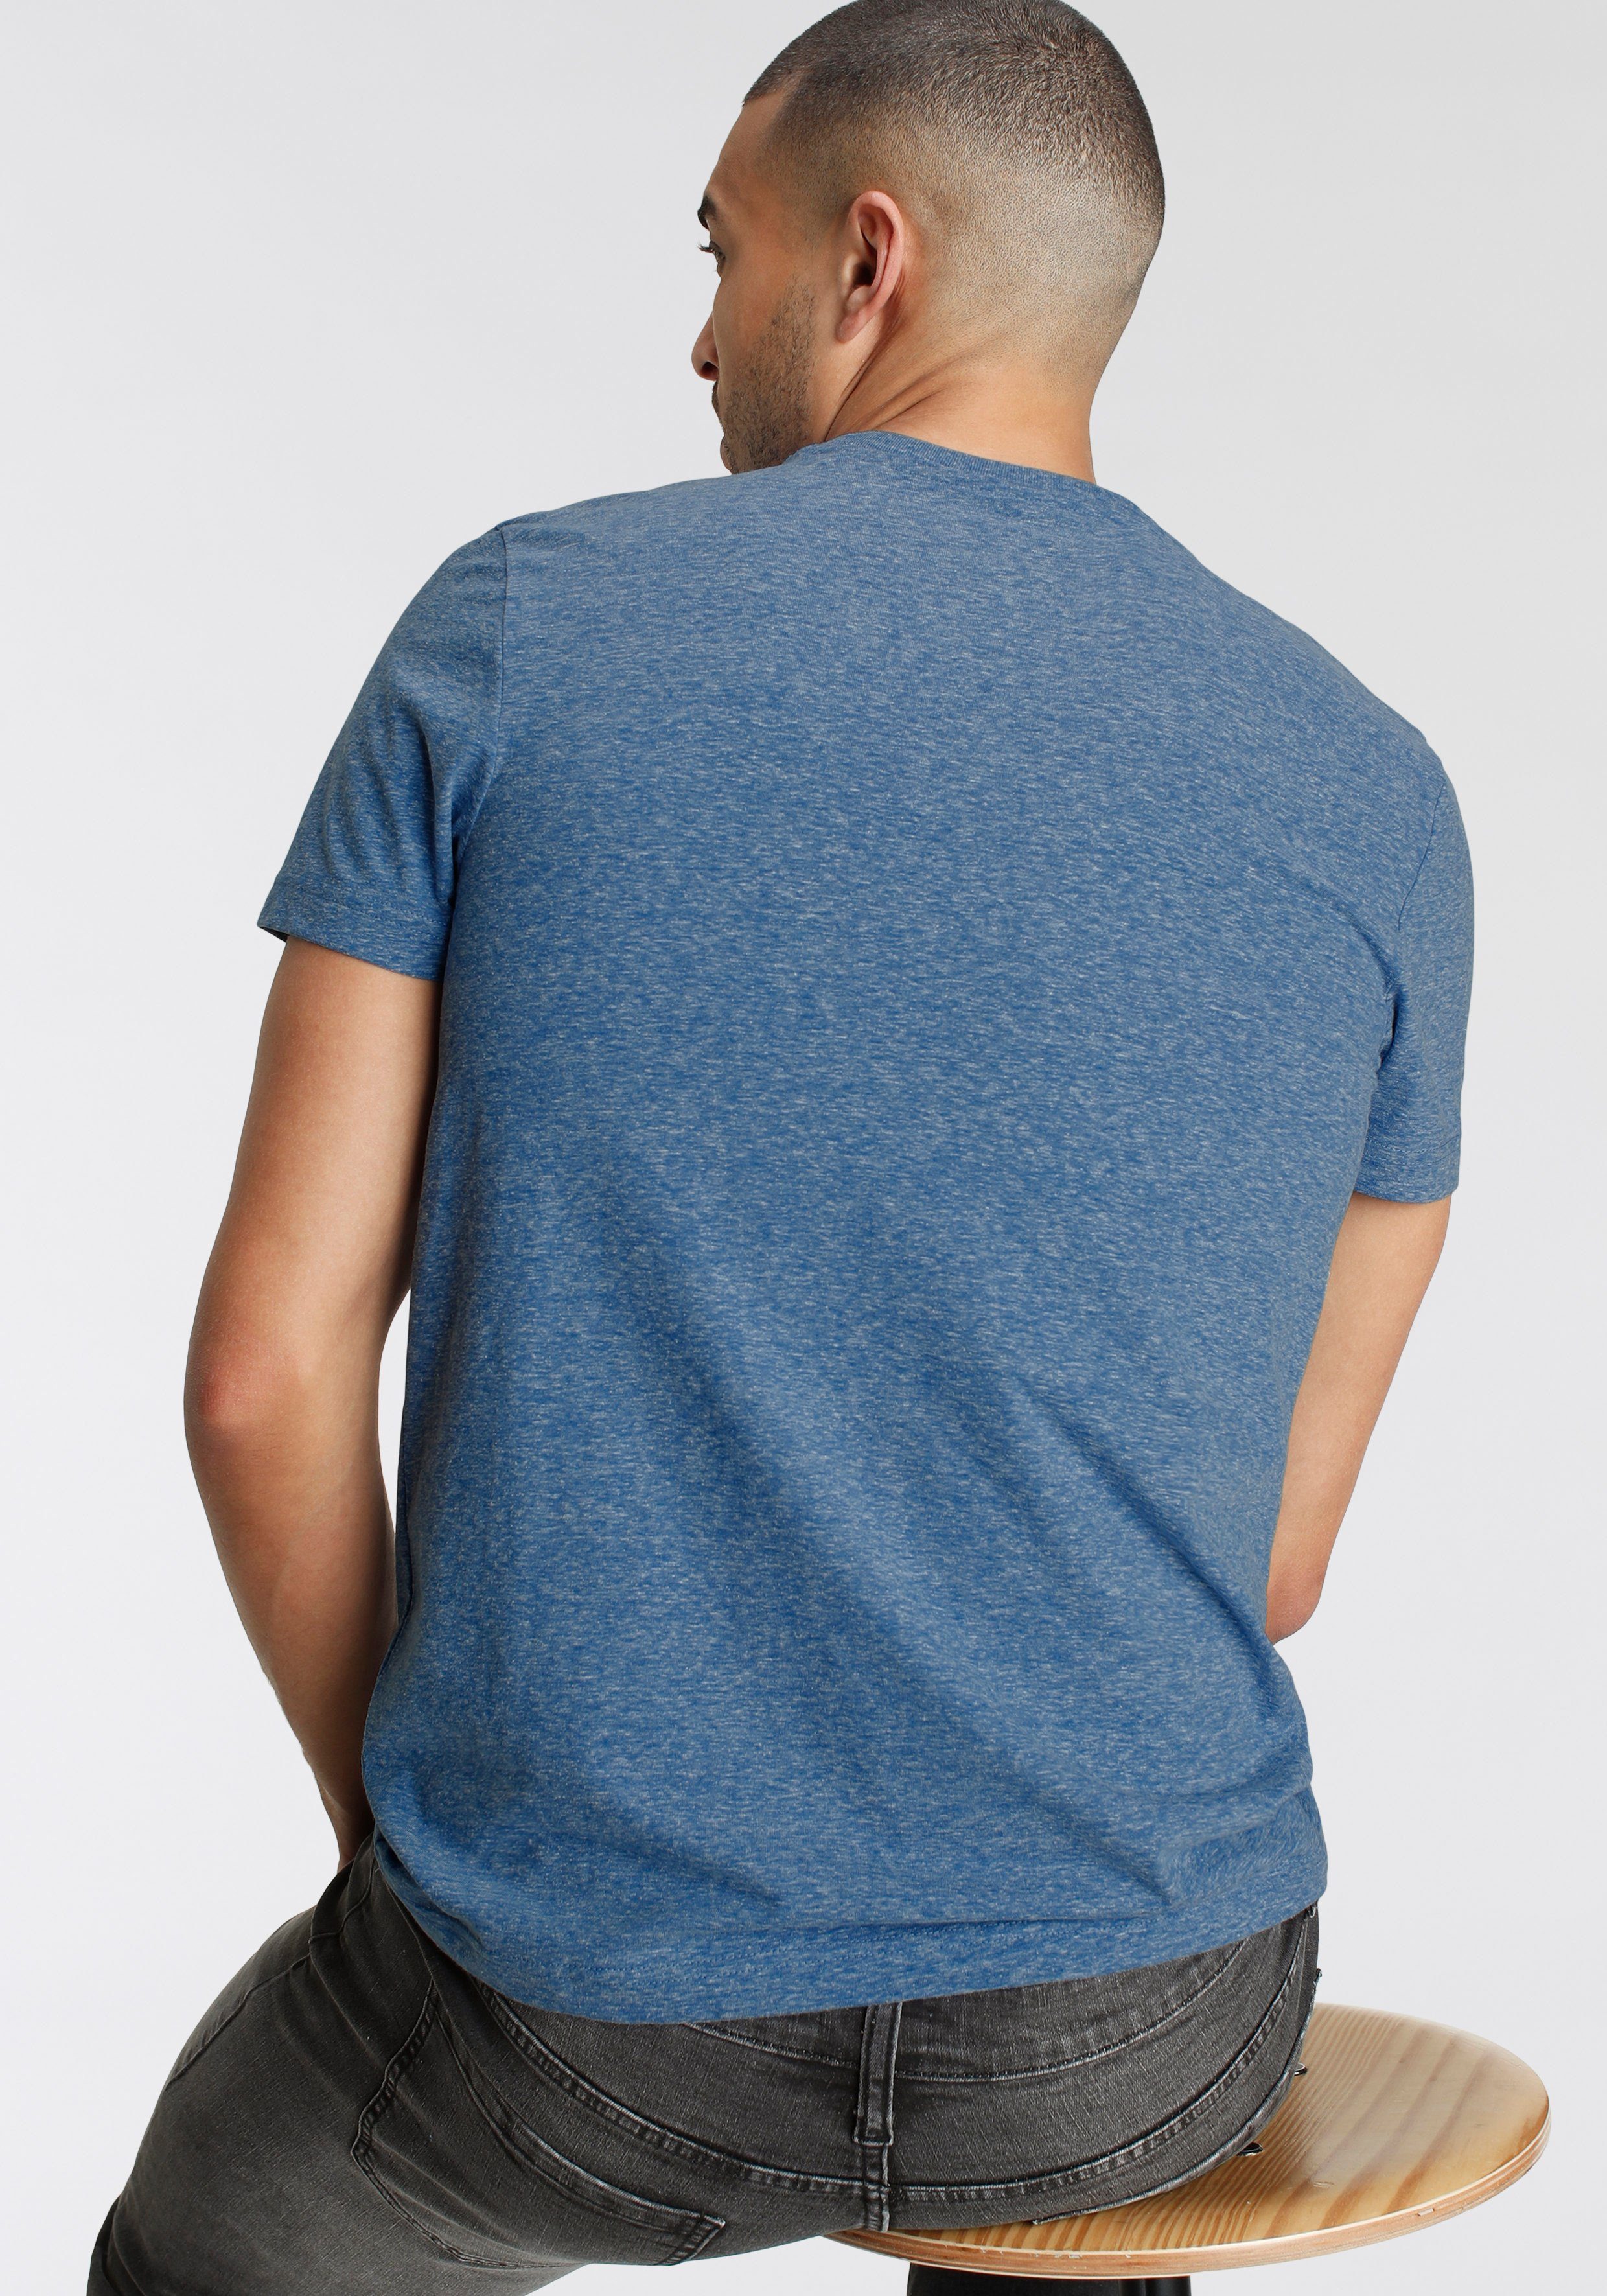 Print Logo Melange besonderer AJC und in T-Shirt mit meliert blau Optik